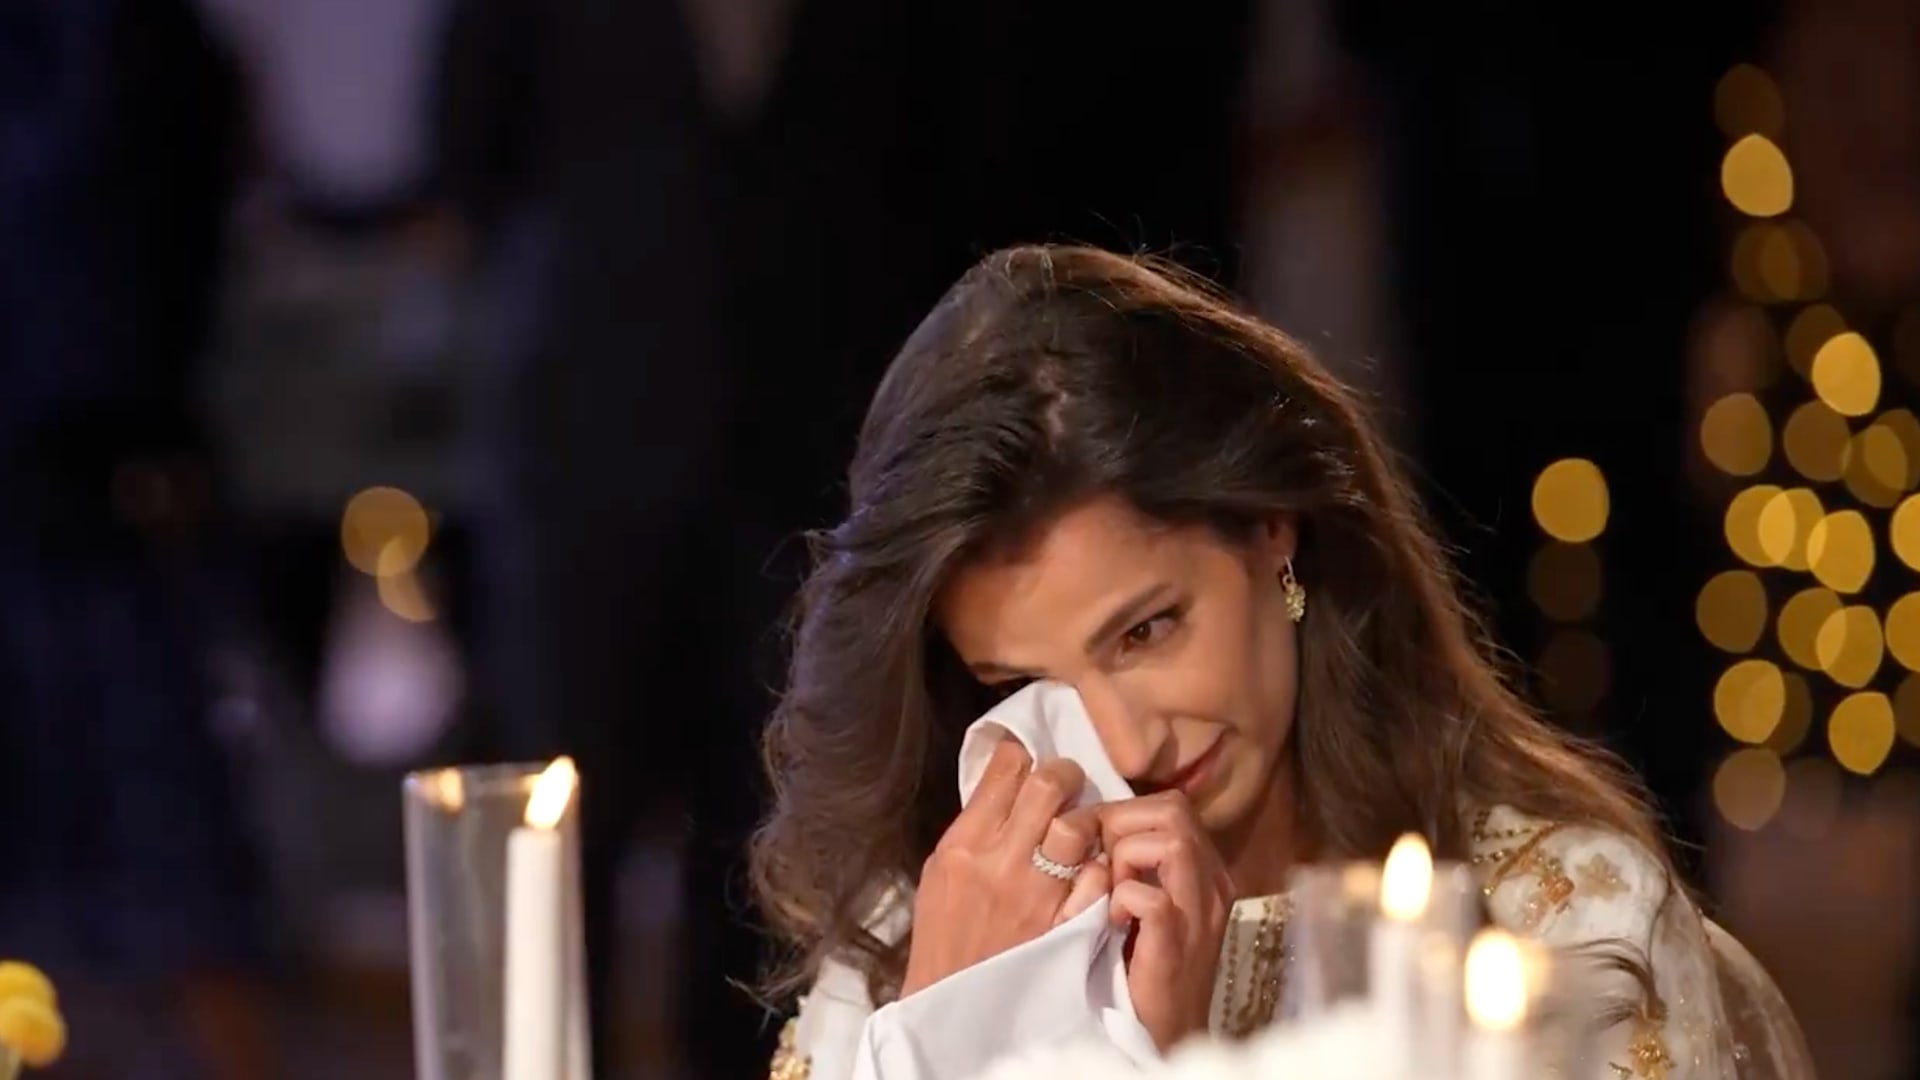 فيديو دموع خطيبة ولي العهد الأردني وظهور الأميرات ووالدة رجوة آل سيف بحفل الحناء يثير تفاعلا